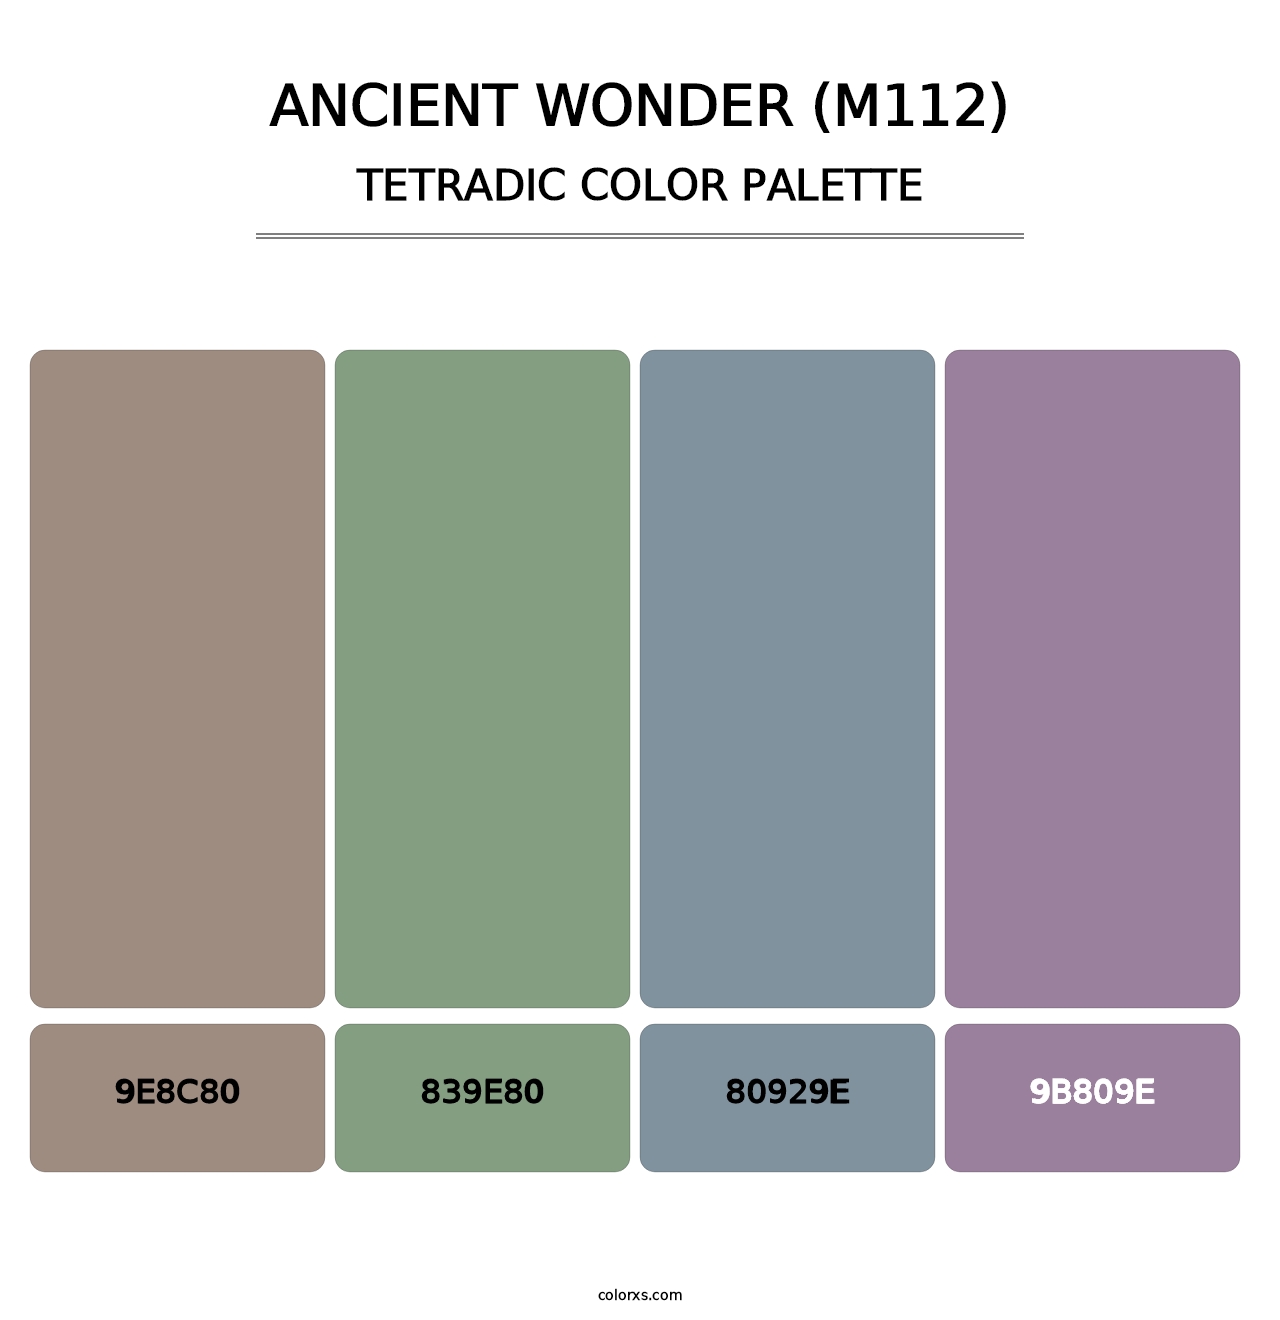 Ancient Wonder (M112) - Tetradic Color Palette